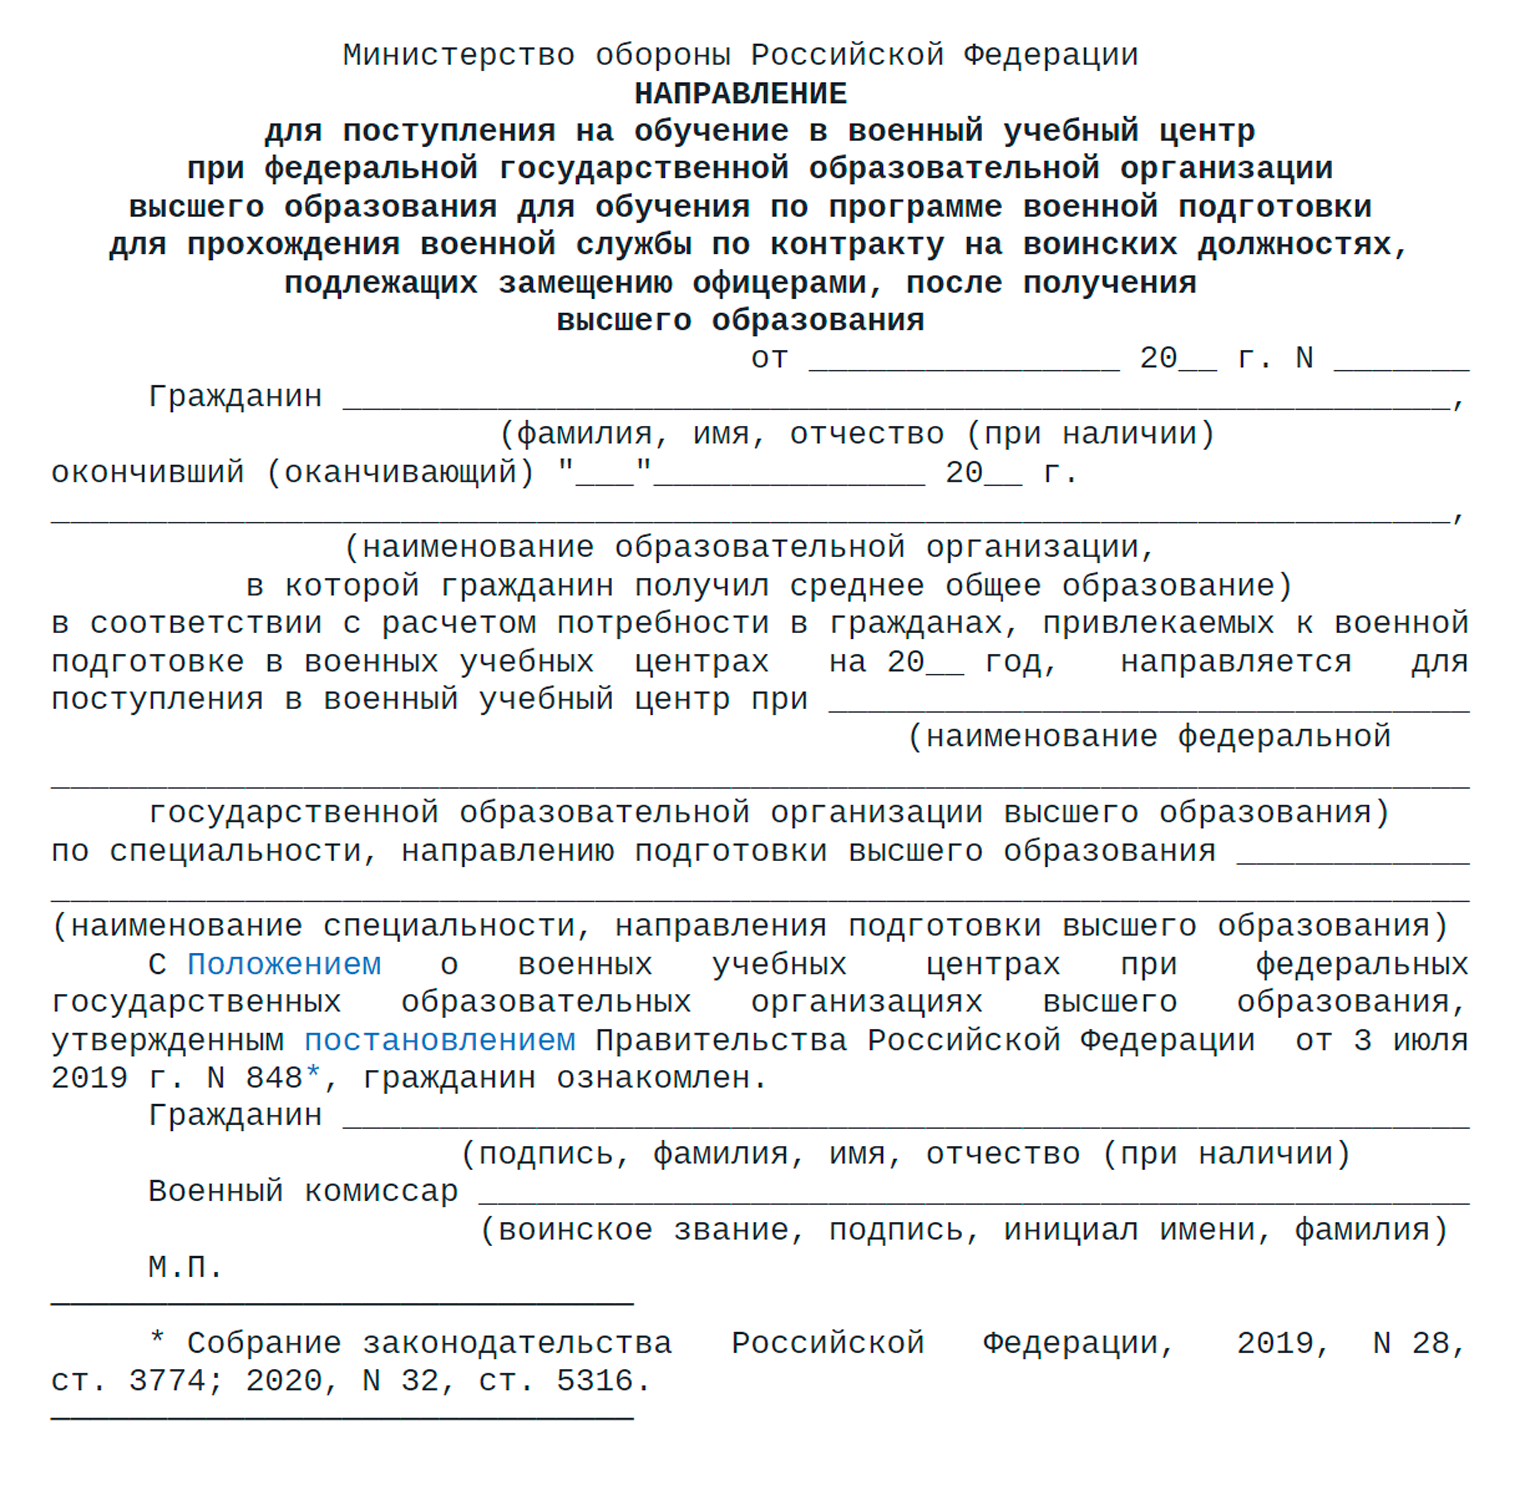 Образец направления на поступление в ВУЦ. Источник: ivo.garant.ru